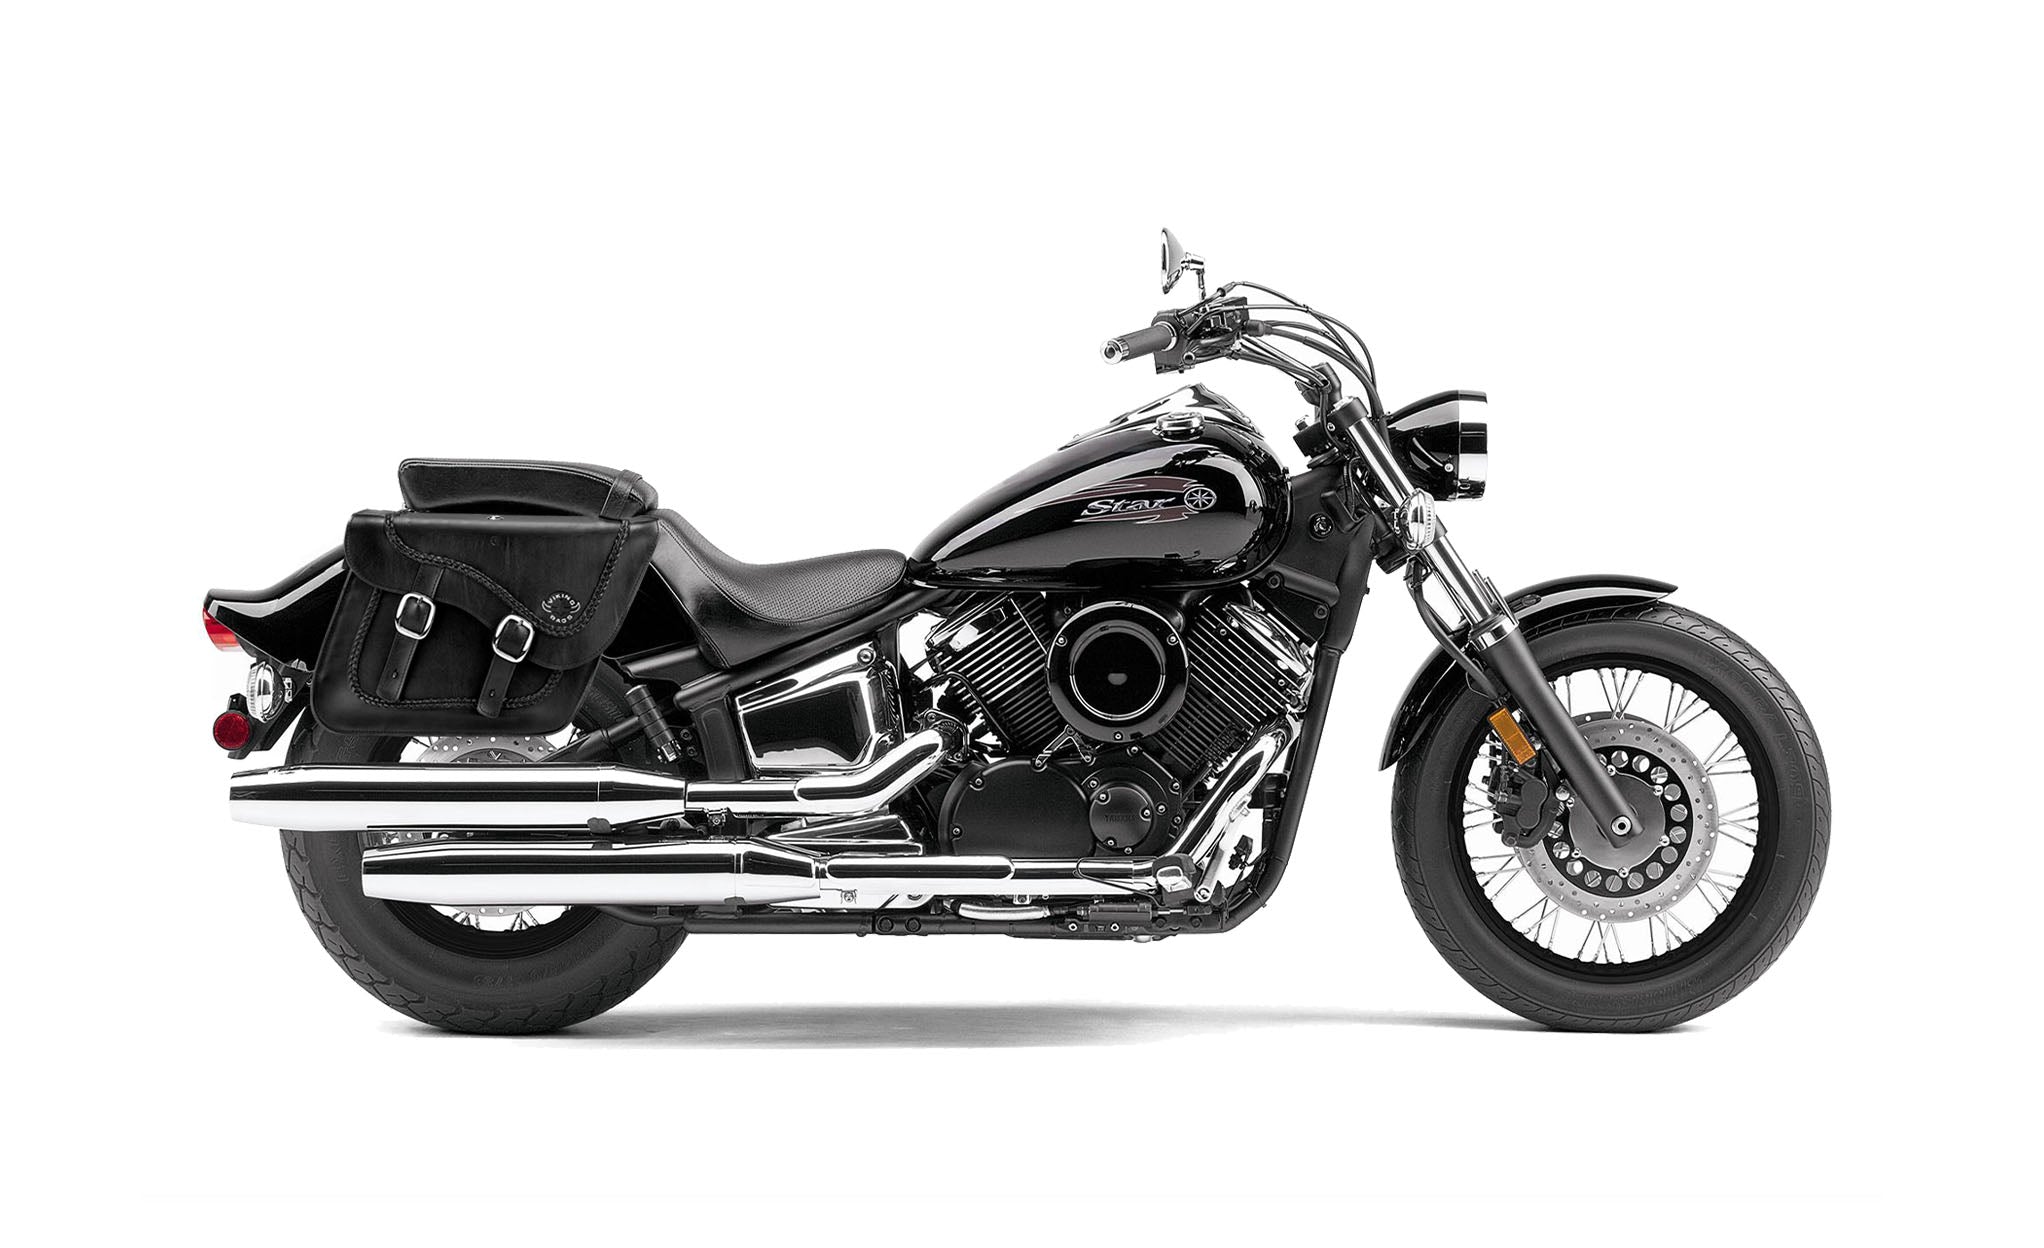 Viking Americano Yamaha V Star 1100 Custom Xvs11T Braided Large Leather Motorcycle Saddlebags on Bike Photo @expand